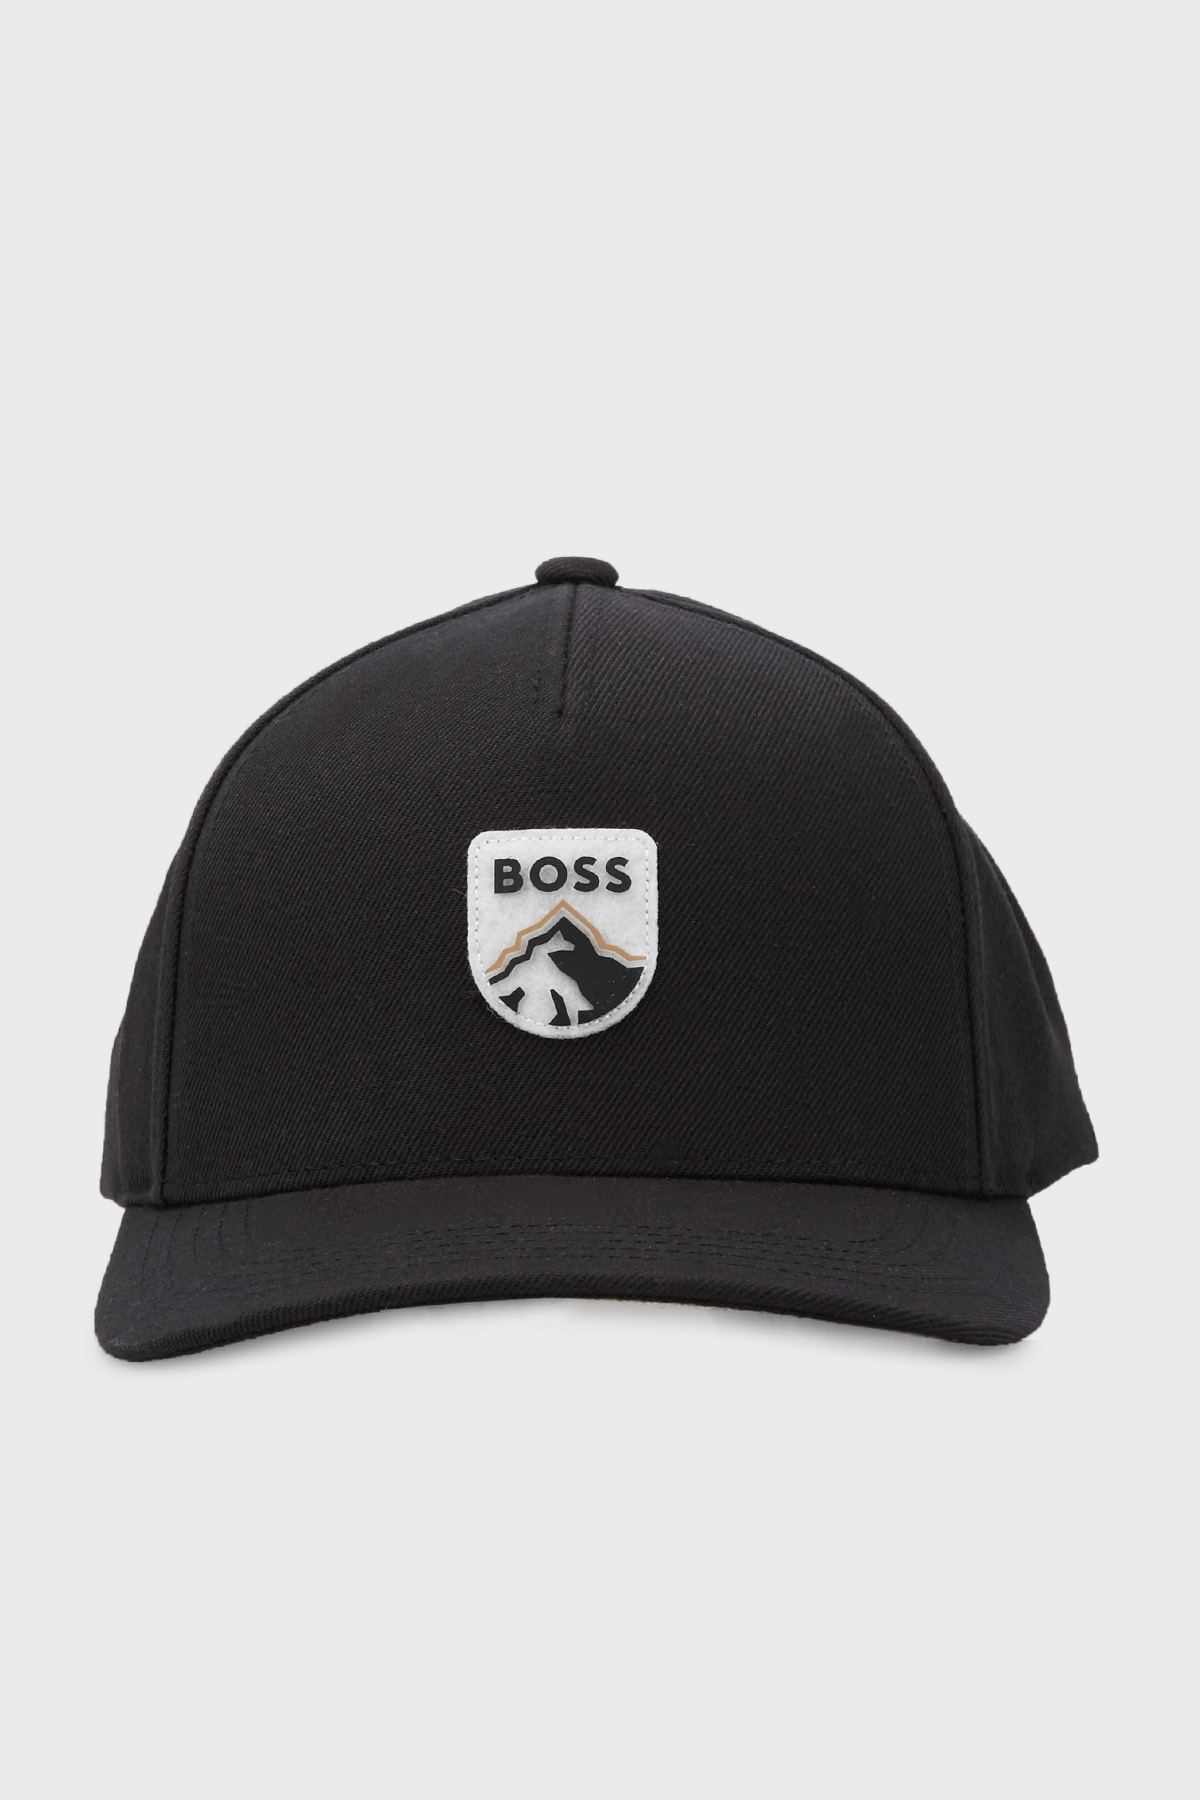 Boss Logolu Erkek Şapka 50476217 001 SİYAH